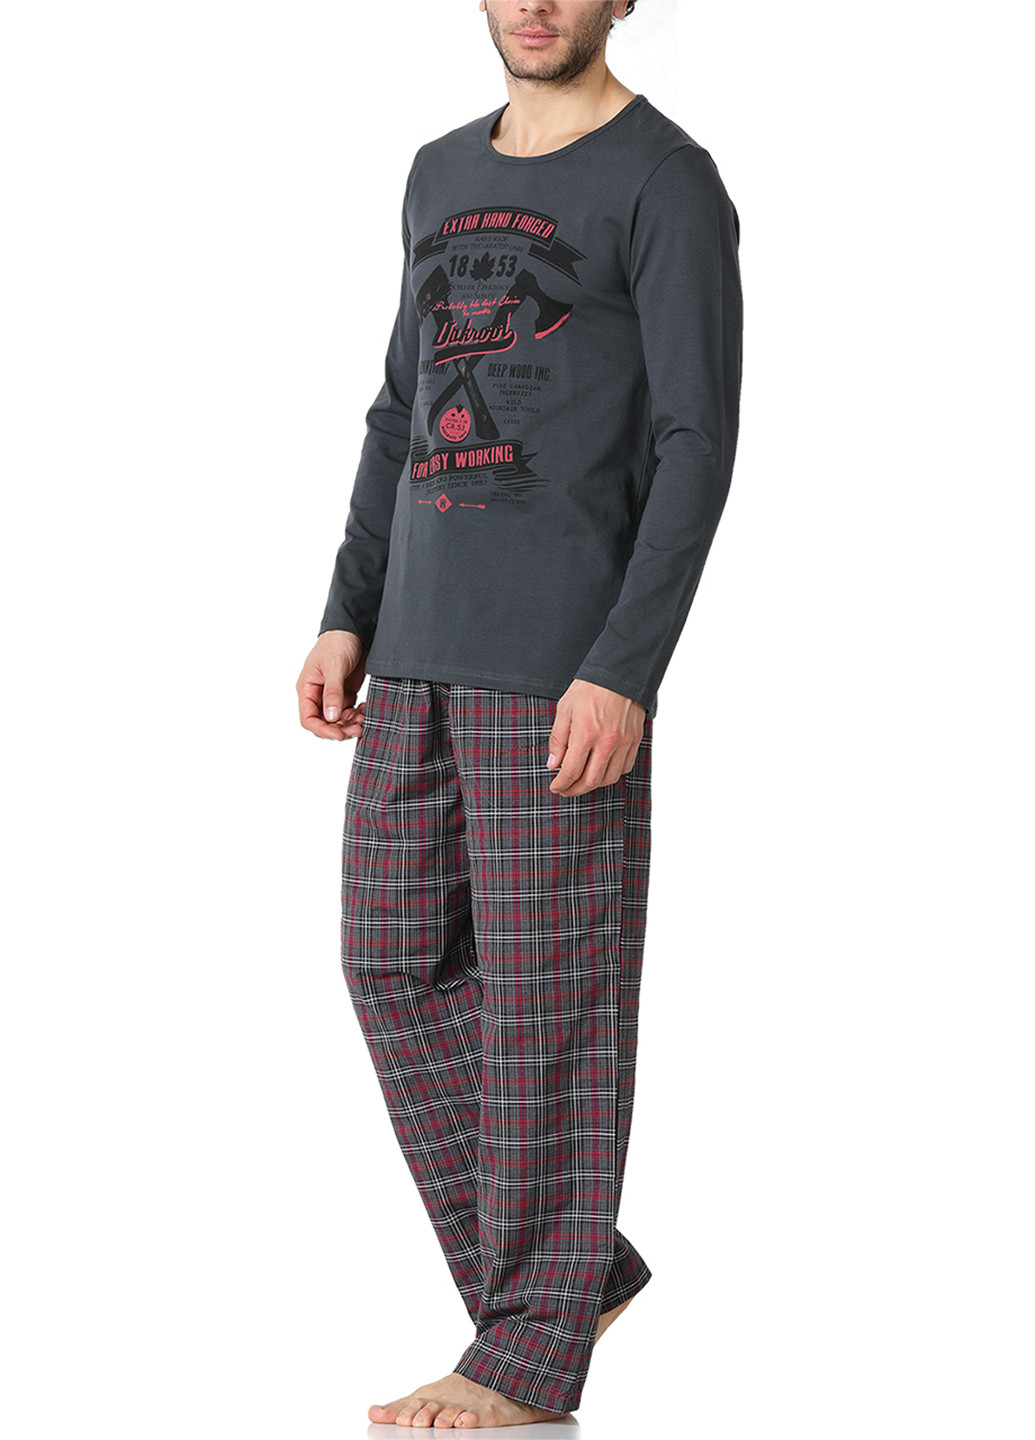 Пижама (лонгслив, брюки) DoReMi лонгслив + брюки клетка тёмно-серая домашняя хлопок